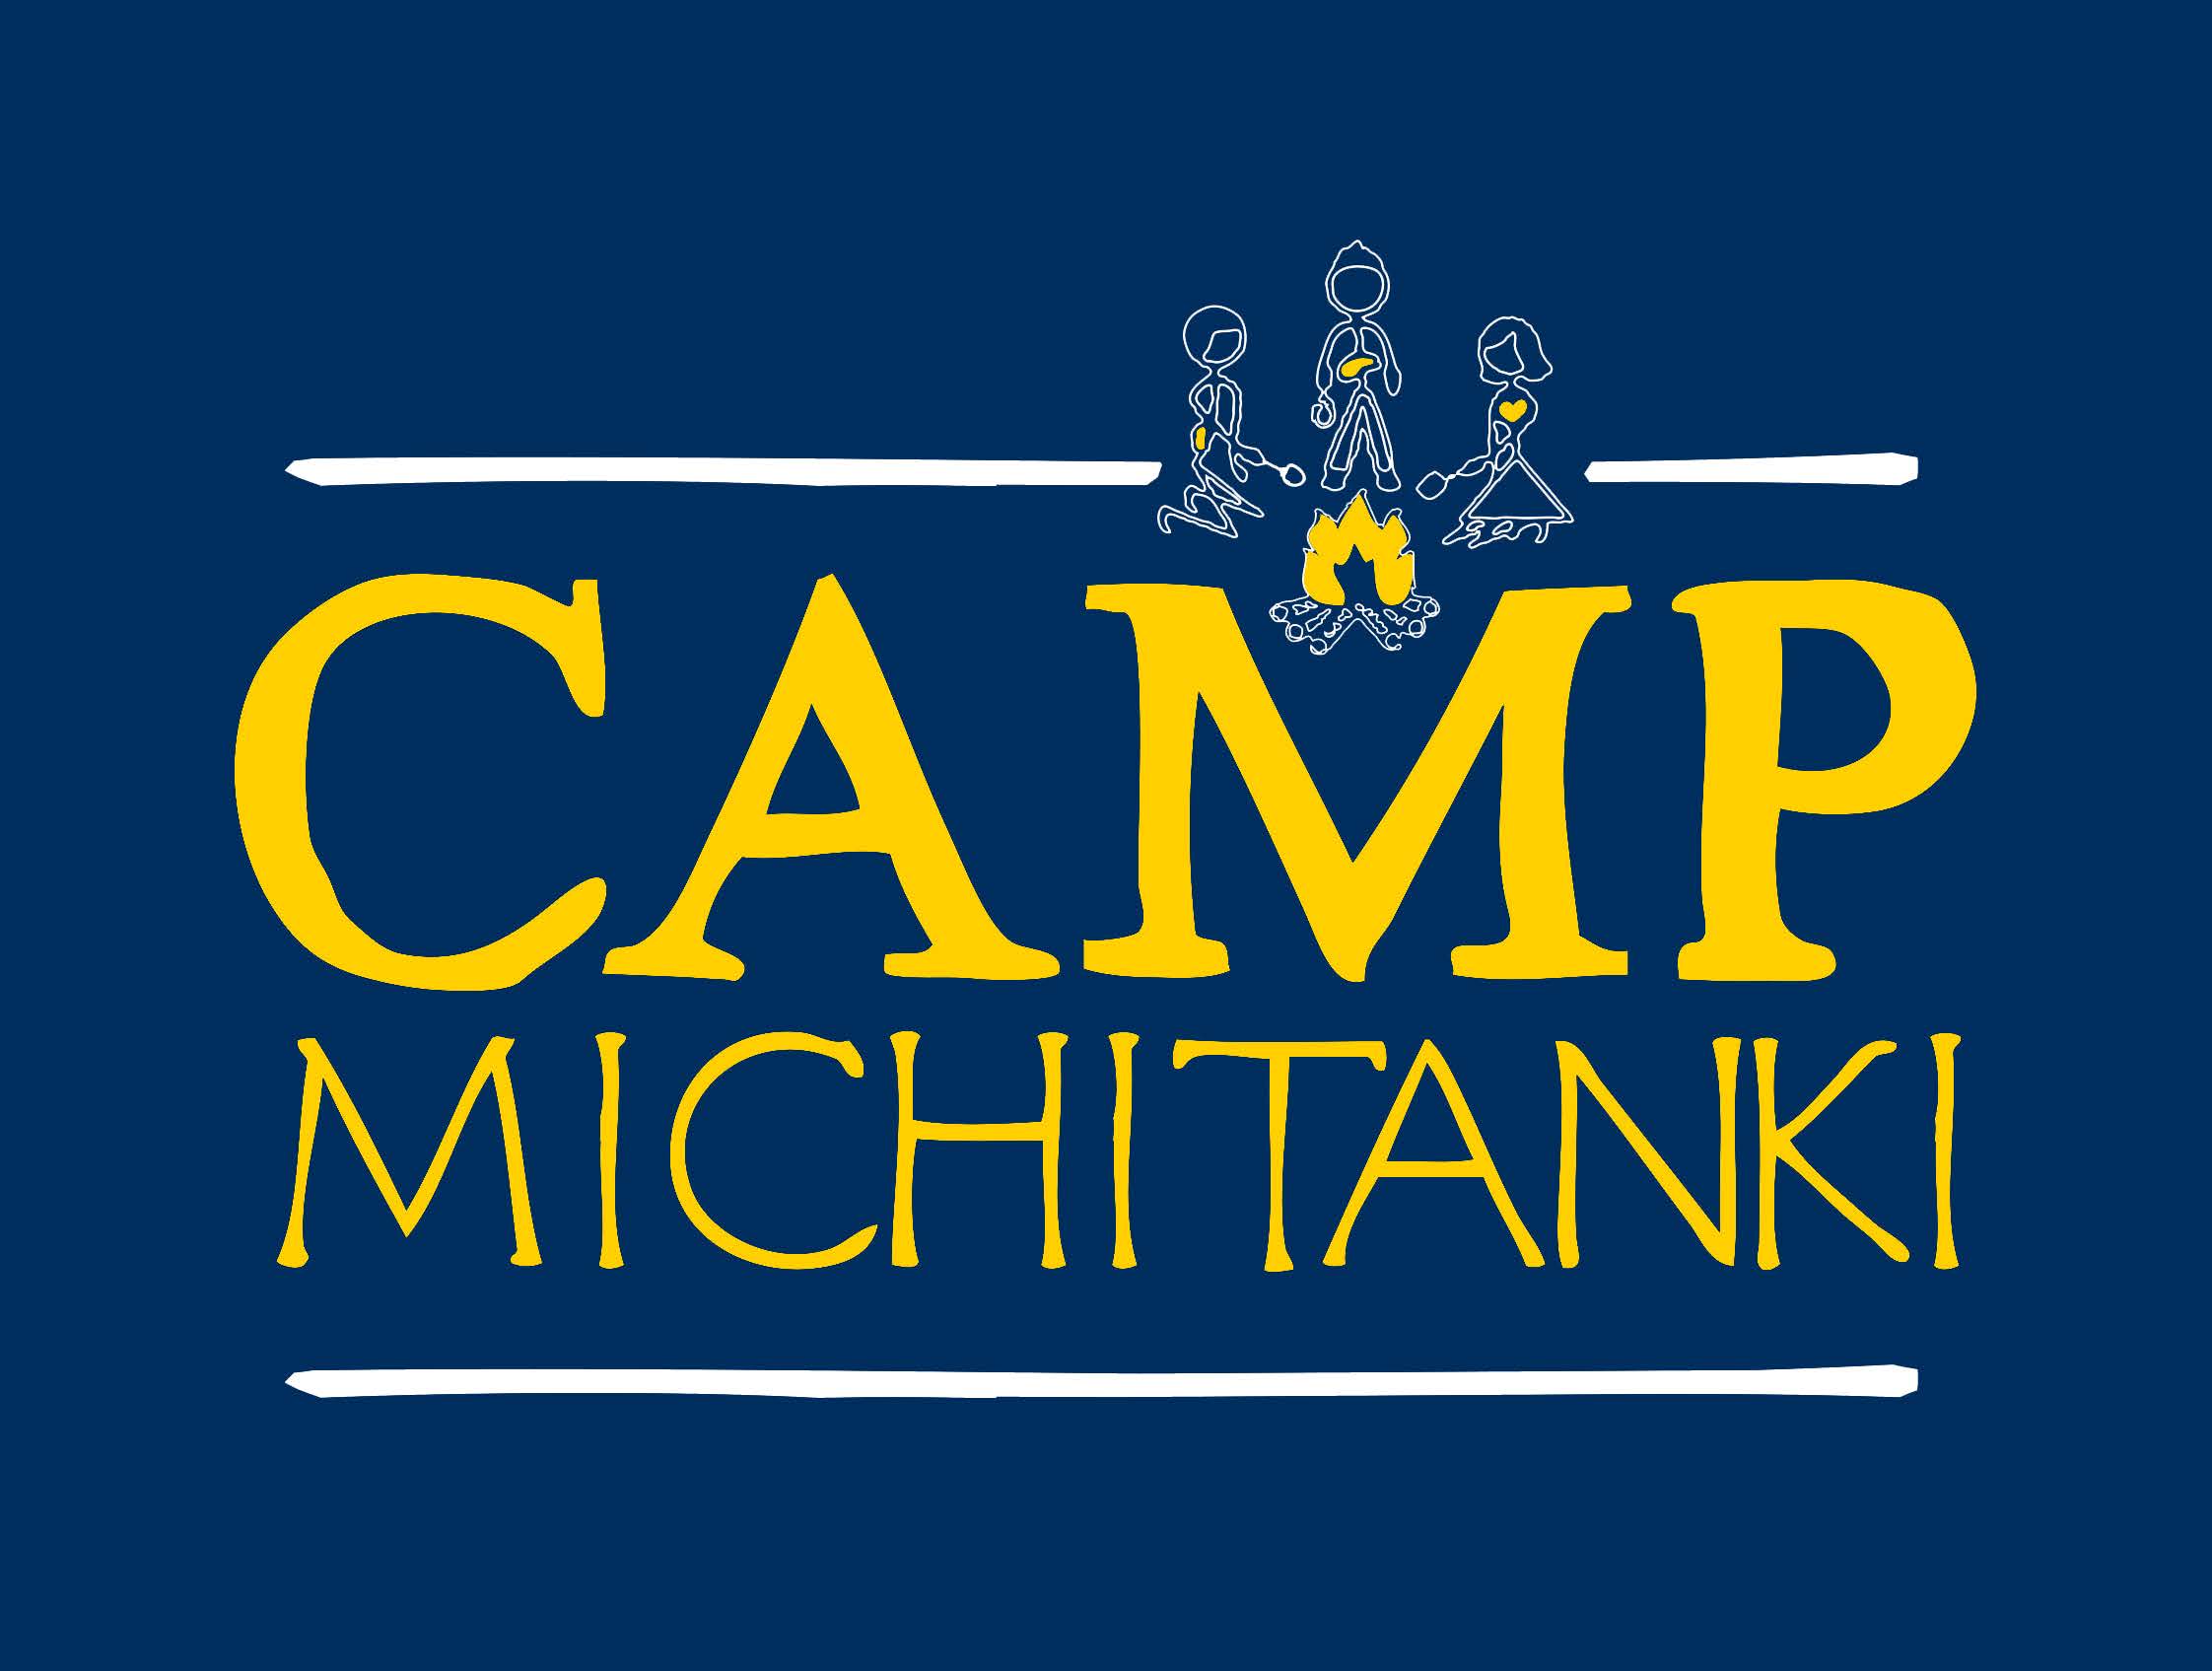 Camp Michitanki logo